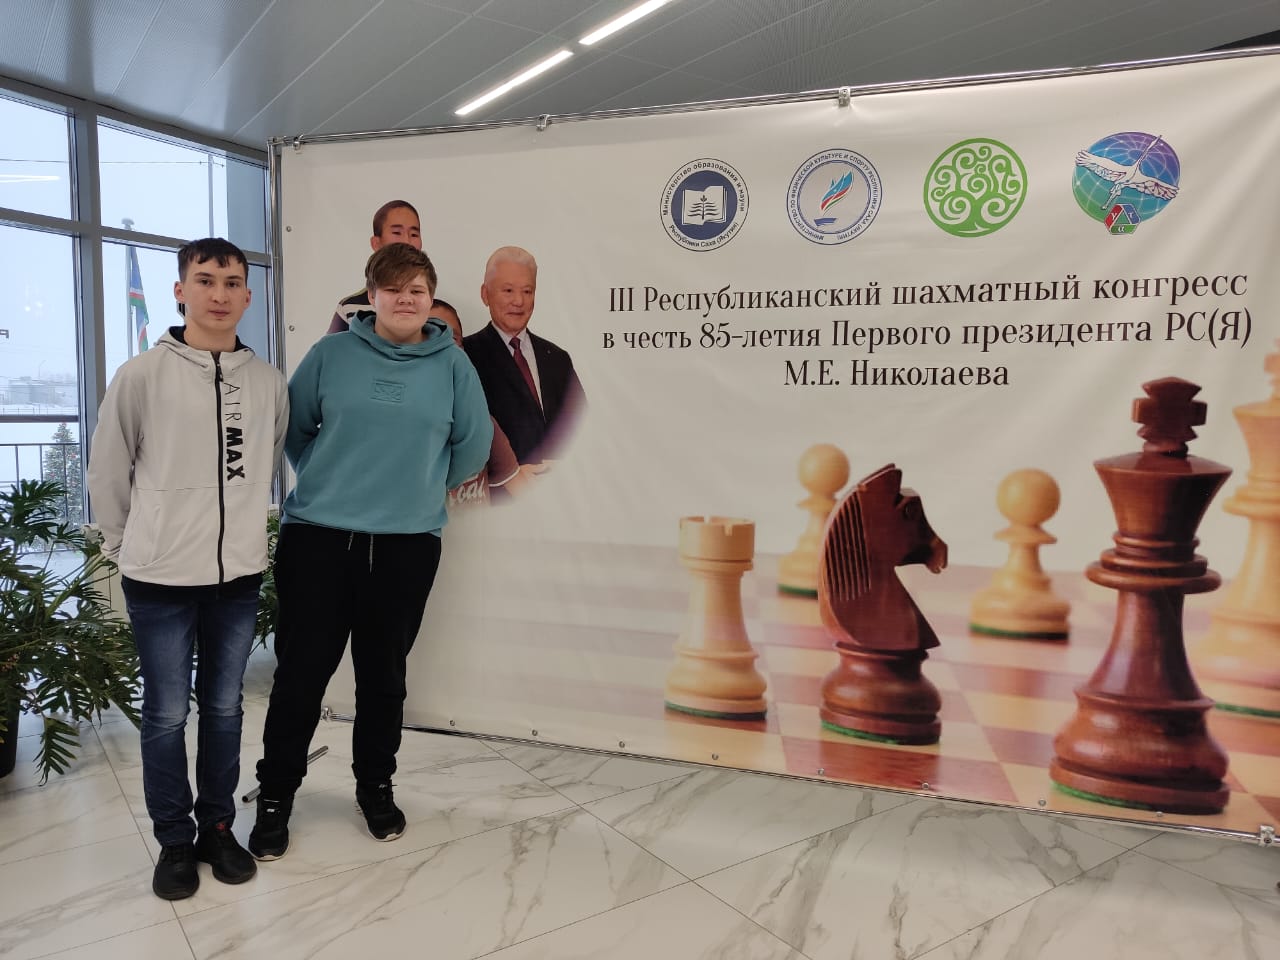 Первые участники республиканского шахматного конгресса прибыли в Якутию